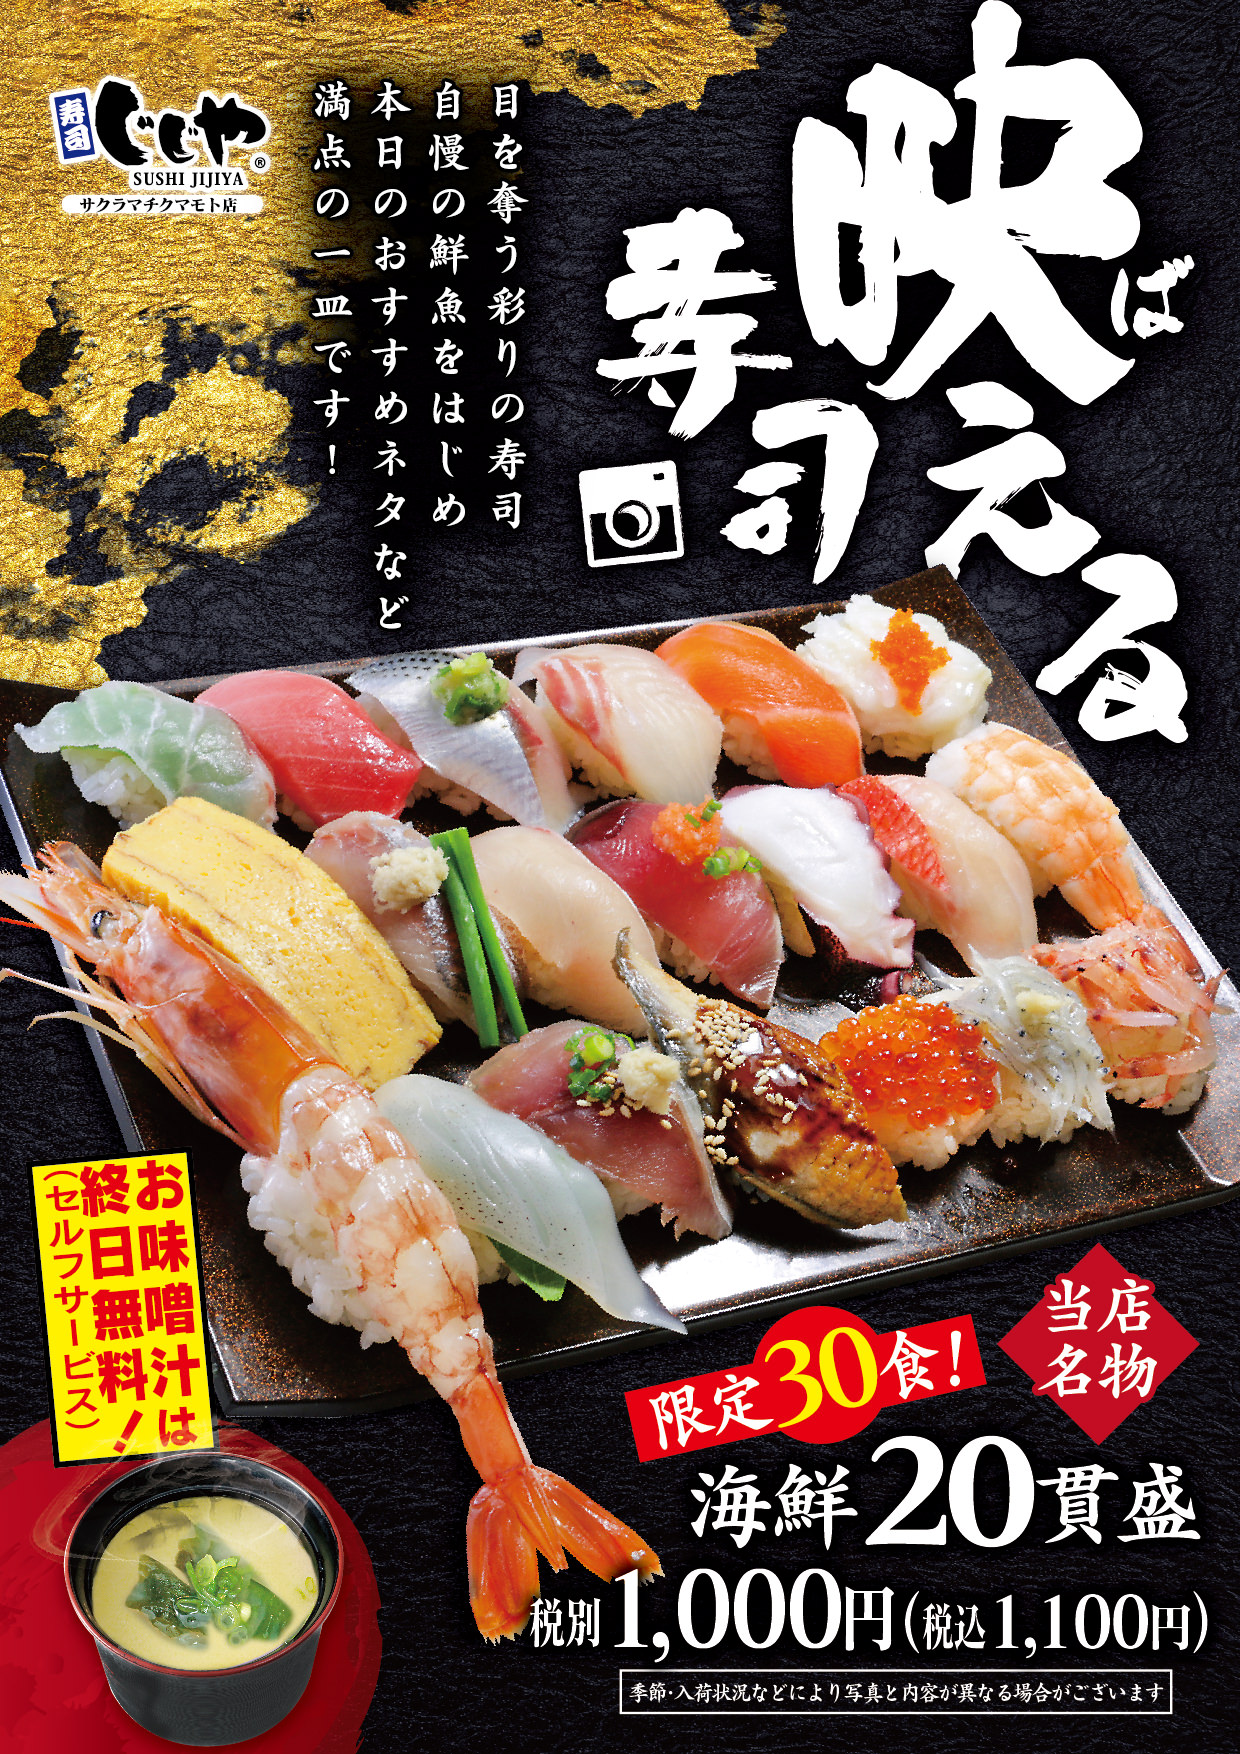 寿司じじや 破格 海鮮すし貫で1 100円 Sakura Machi Kumamoto サクラマチ クマモト